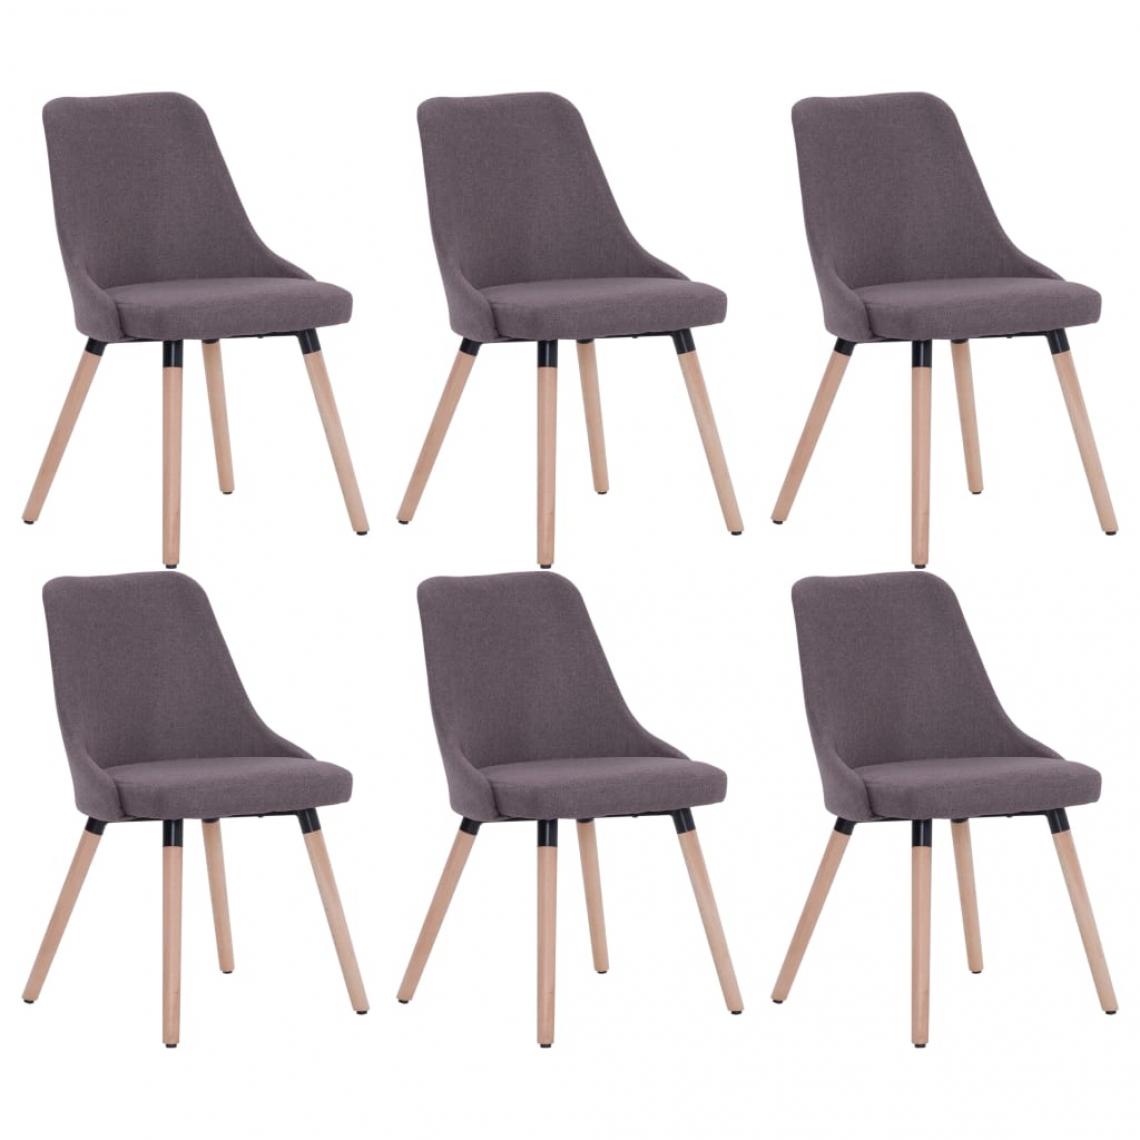 Decoshop26 - Lot de 6 chaises de salle à manger cuisine design moderne tissu taupe CDS022857 - Chaises